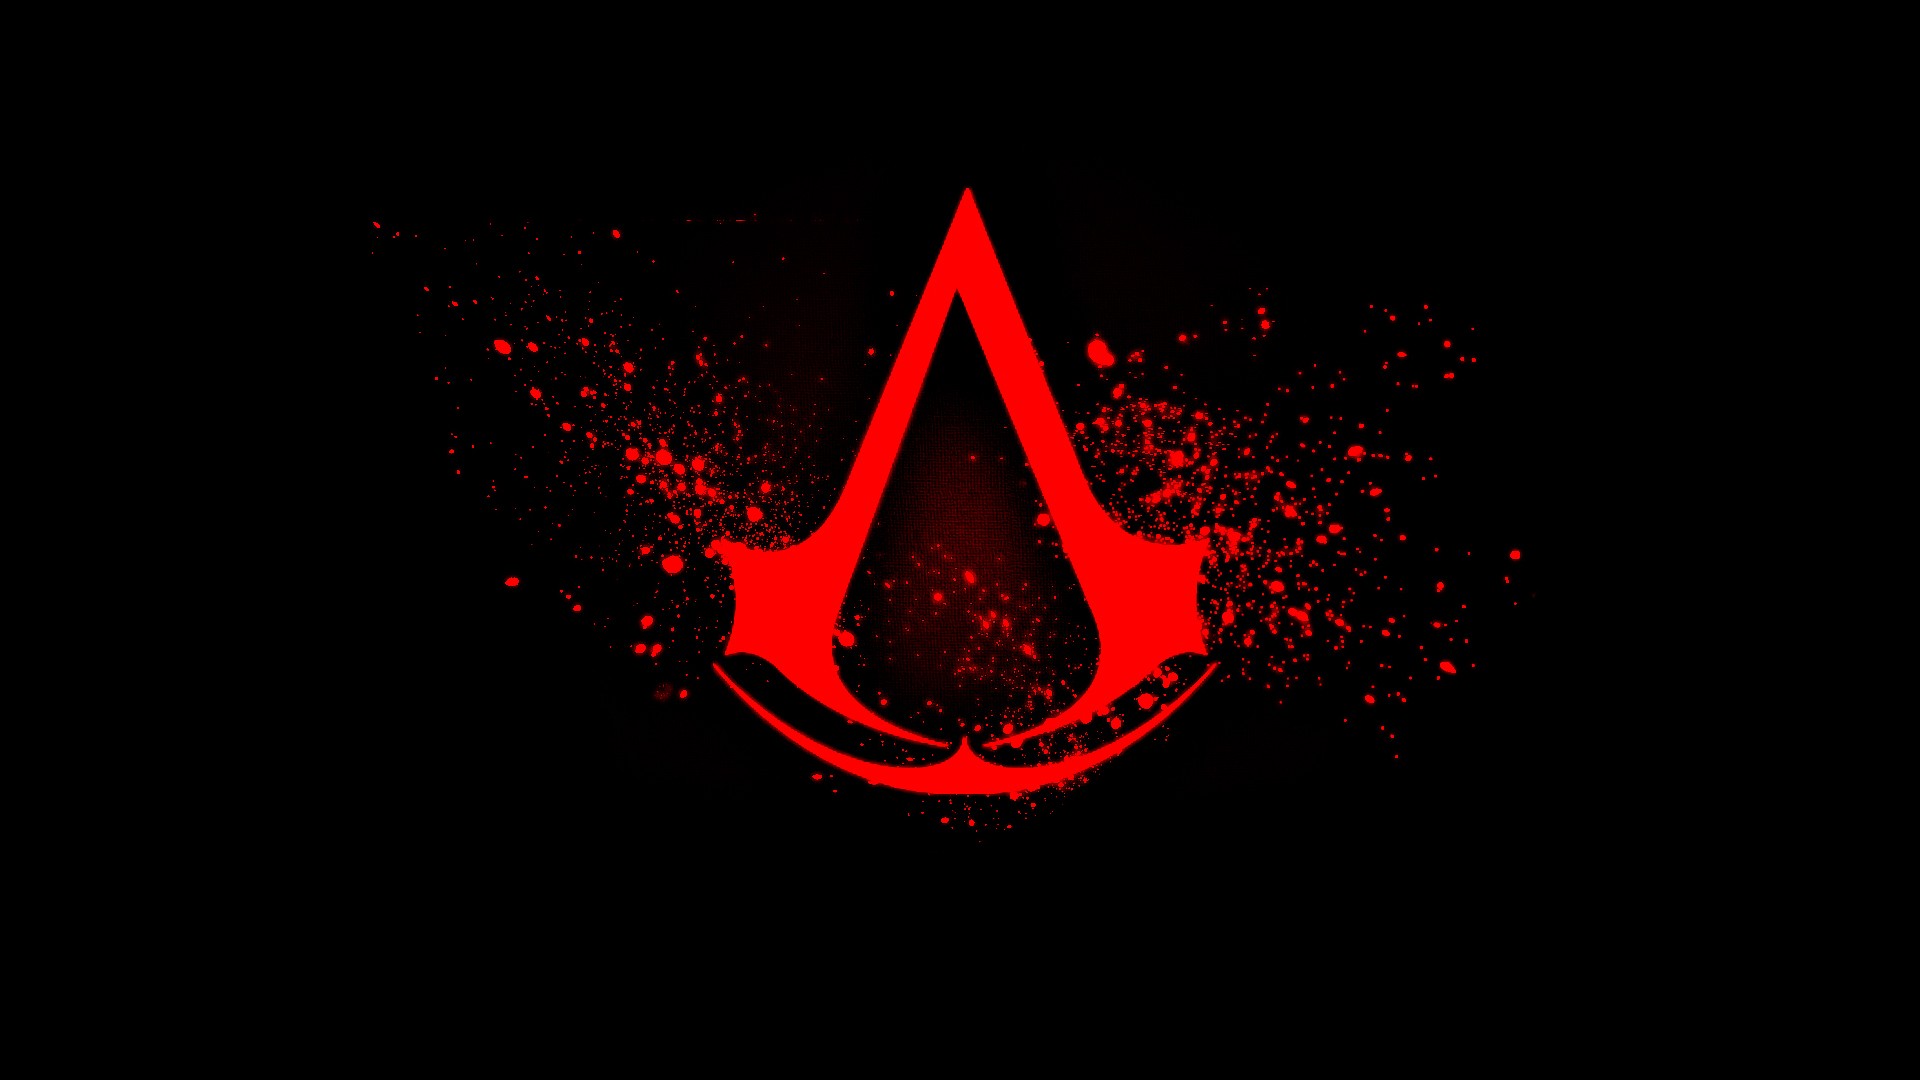 Assassins Creed, Assassins Creed: Revelations, Assassins Creed 2, Ezio Auditore Da Firenze Wallpaper